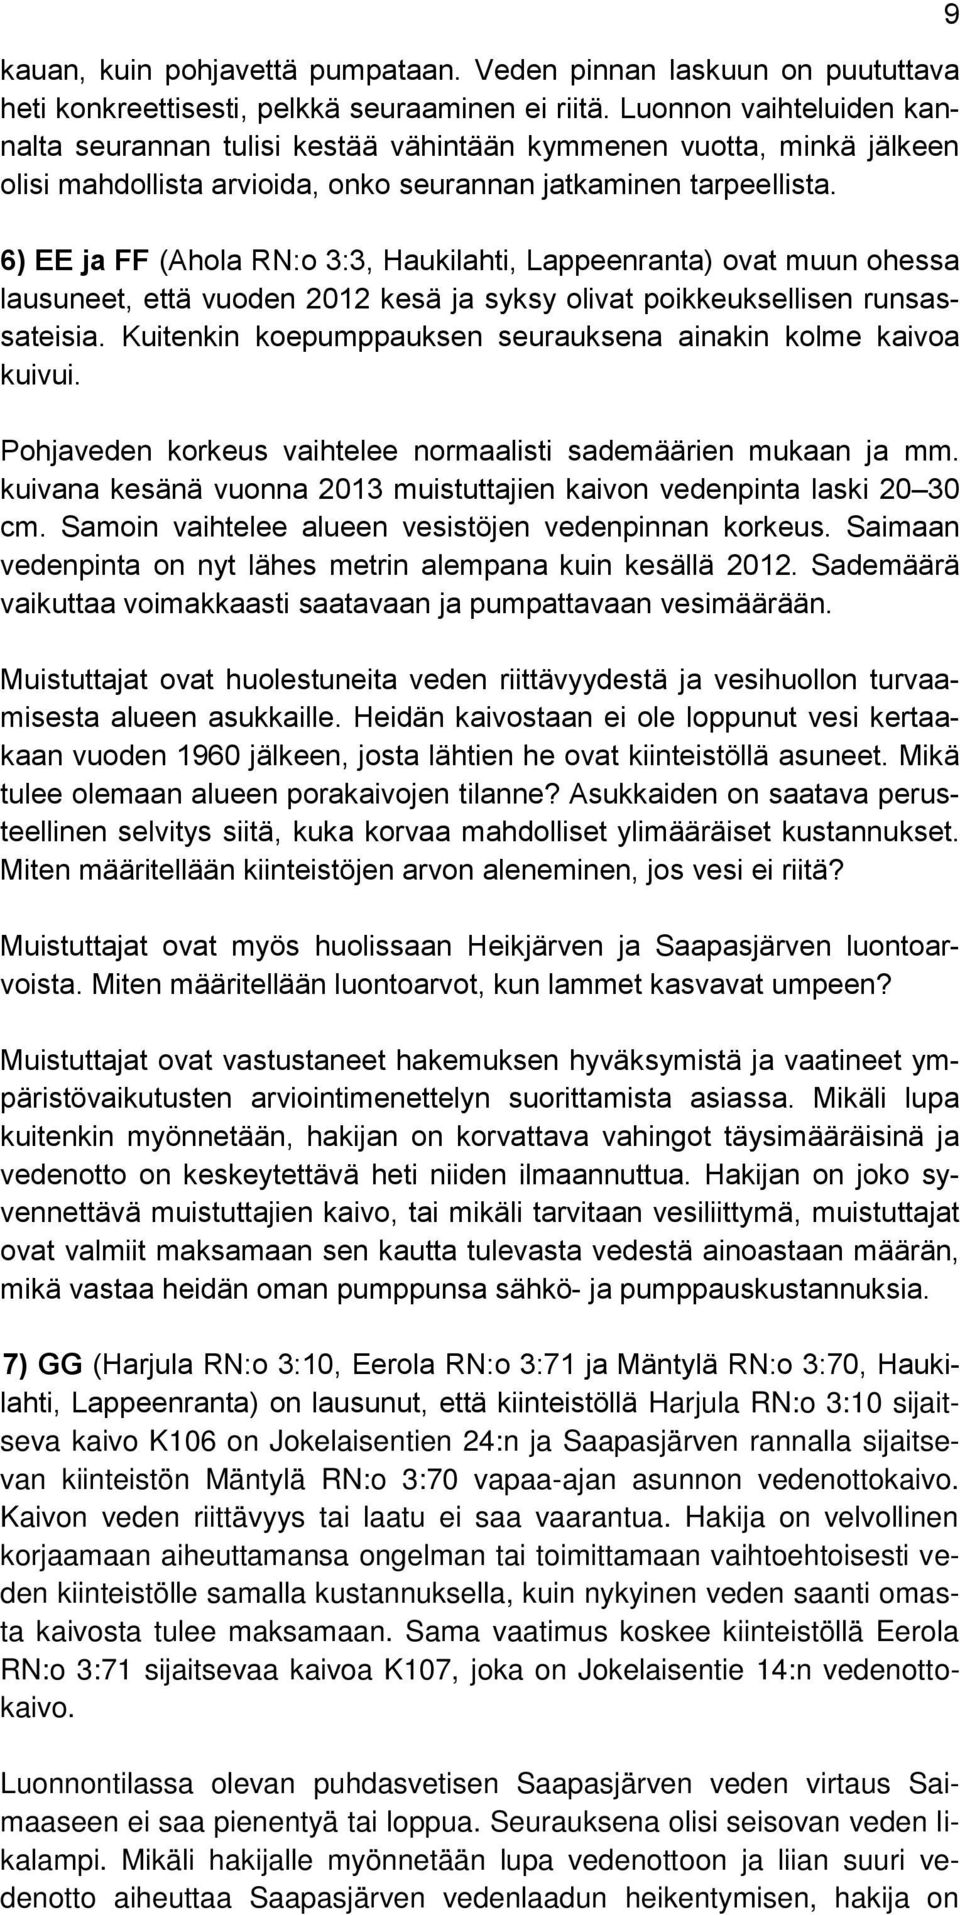 6) EE ja FF (Ahola RN:o 3:3, Haukilahti, Lappeenranta) ovat muun ohessa lausuneet, että vuoden 2012 kesä ja syksy olivat poikkeuksellisen runsassateisia.